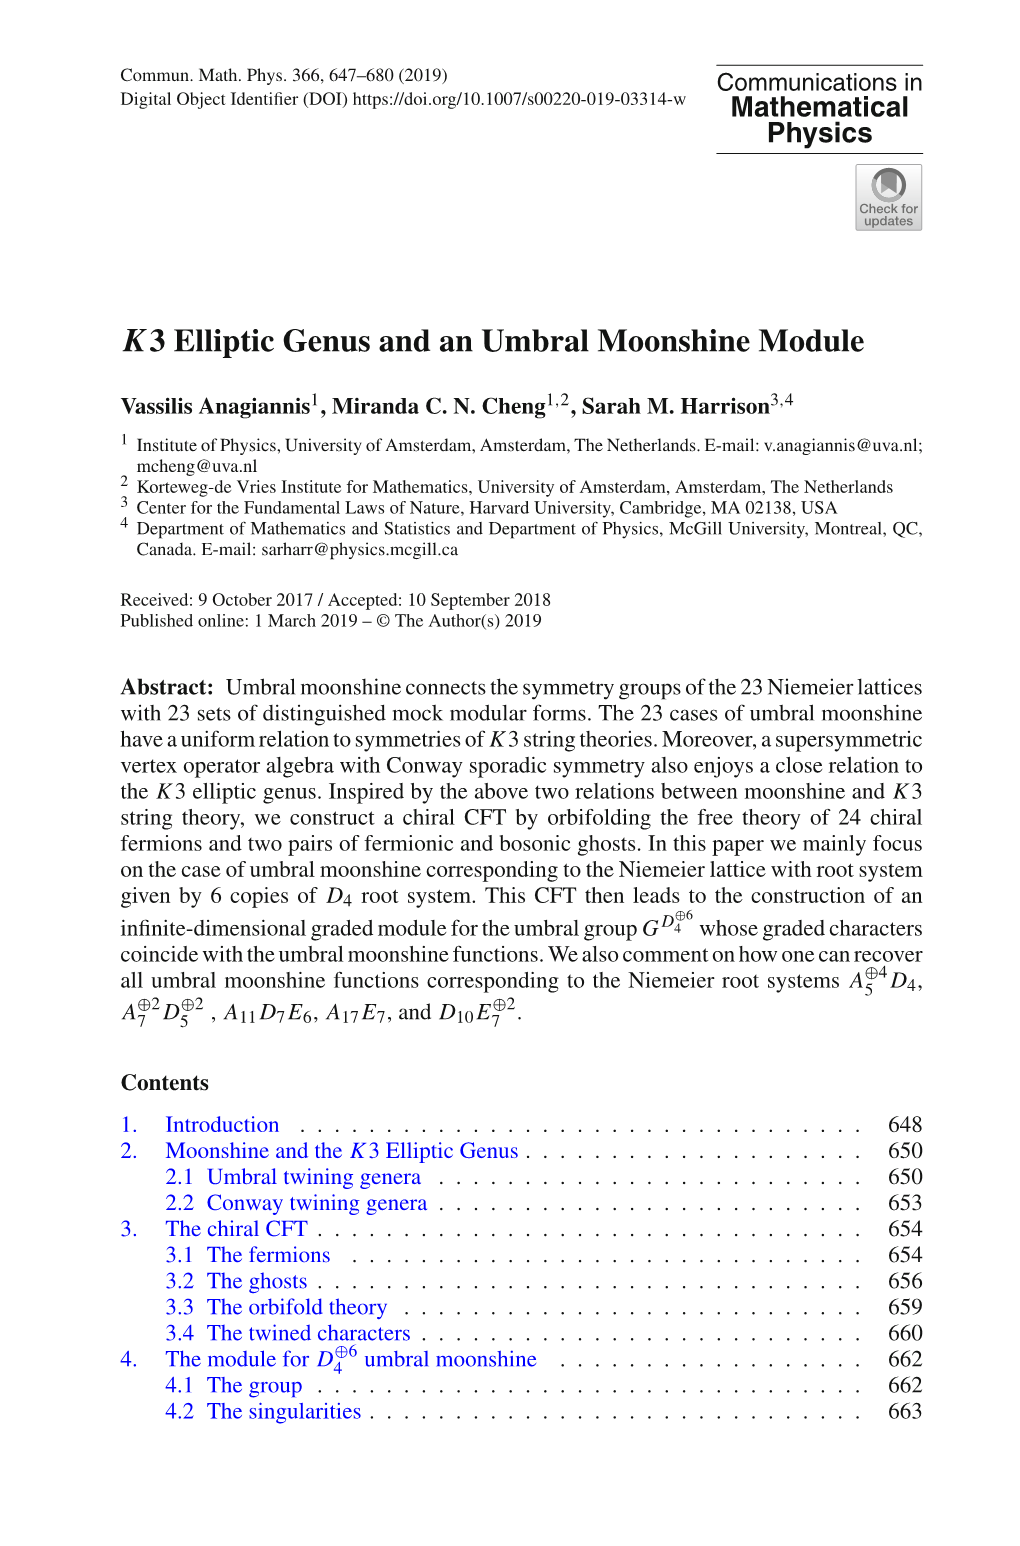 K3 Elliptic Genus and an Umbral Moonshine Module